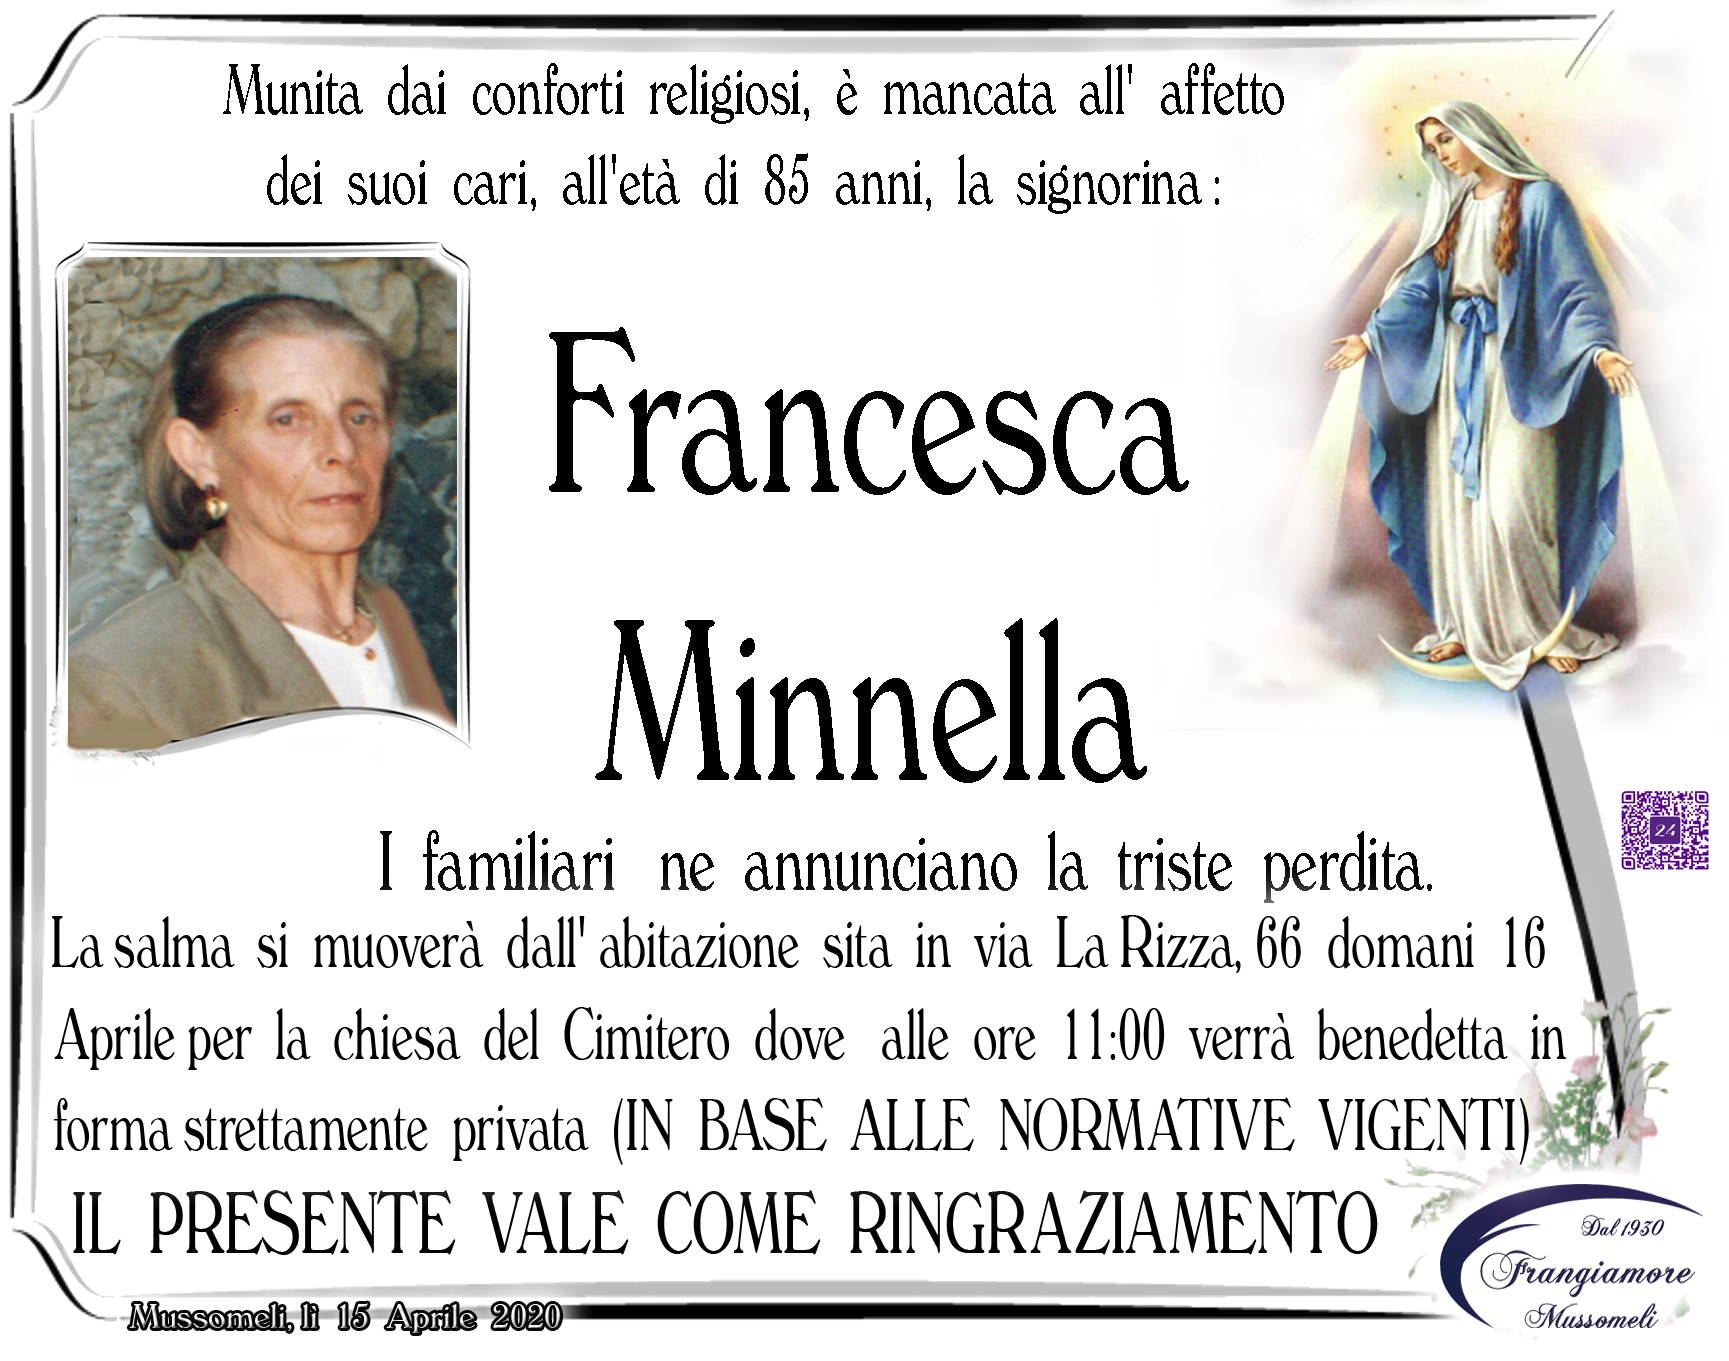 Francesca Minnella